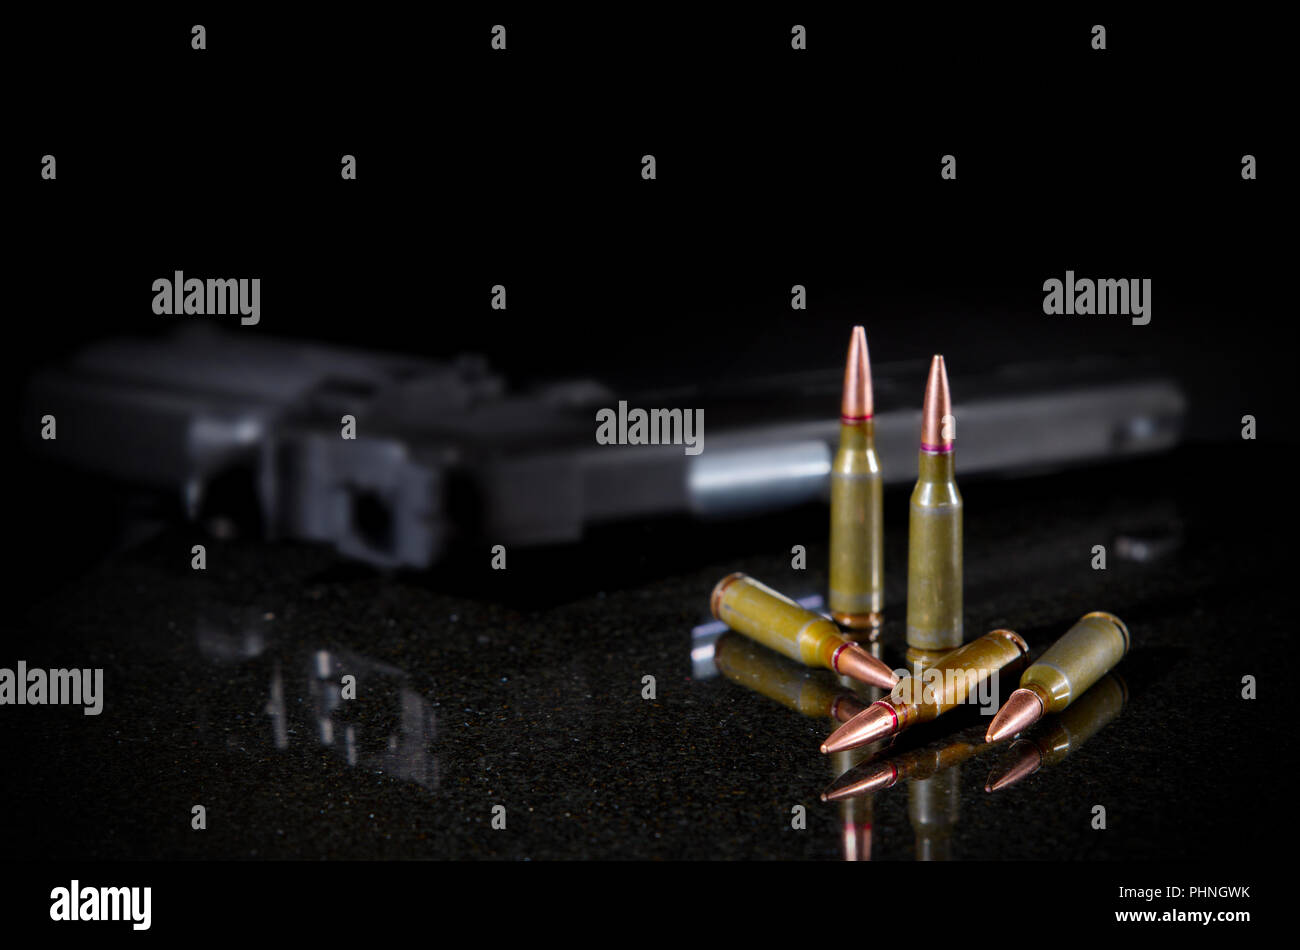 Ammunition cartridges on black background Stock Photo